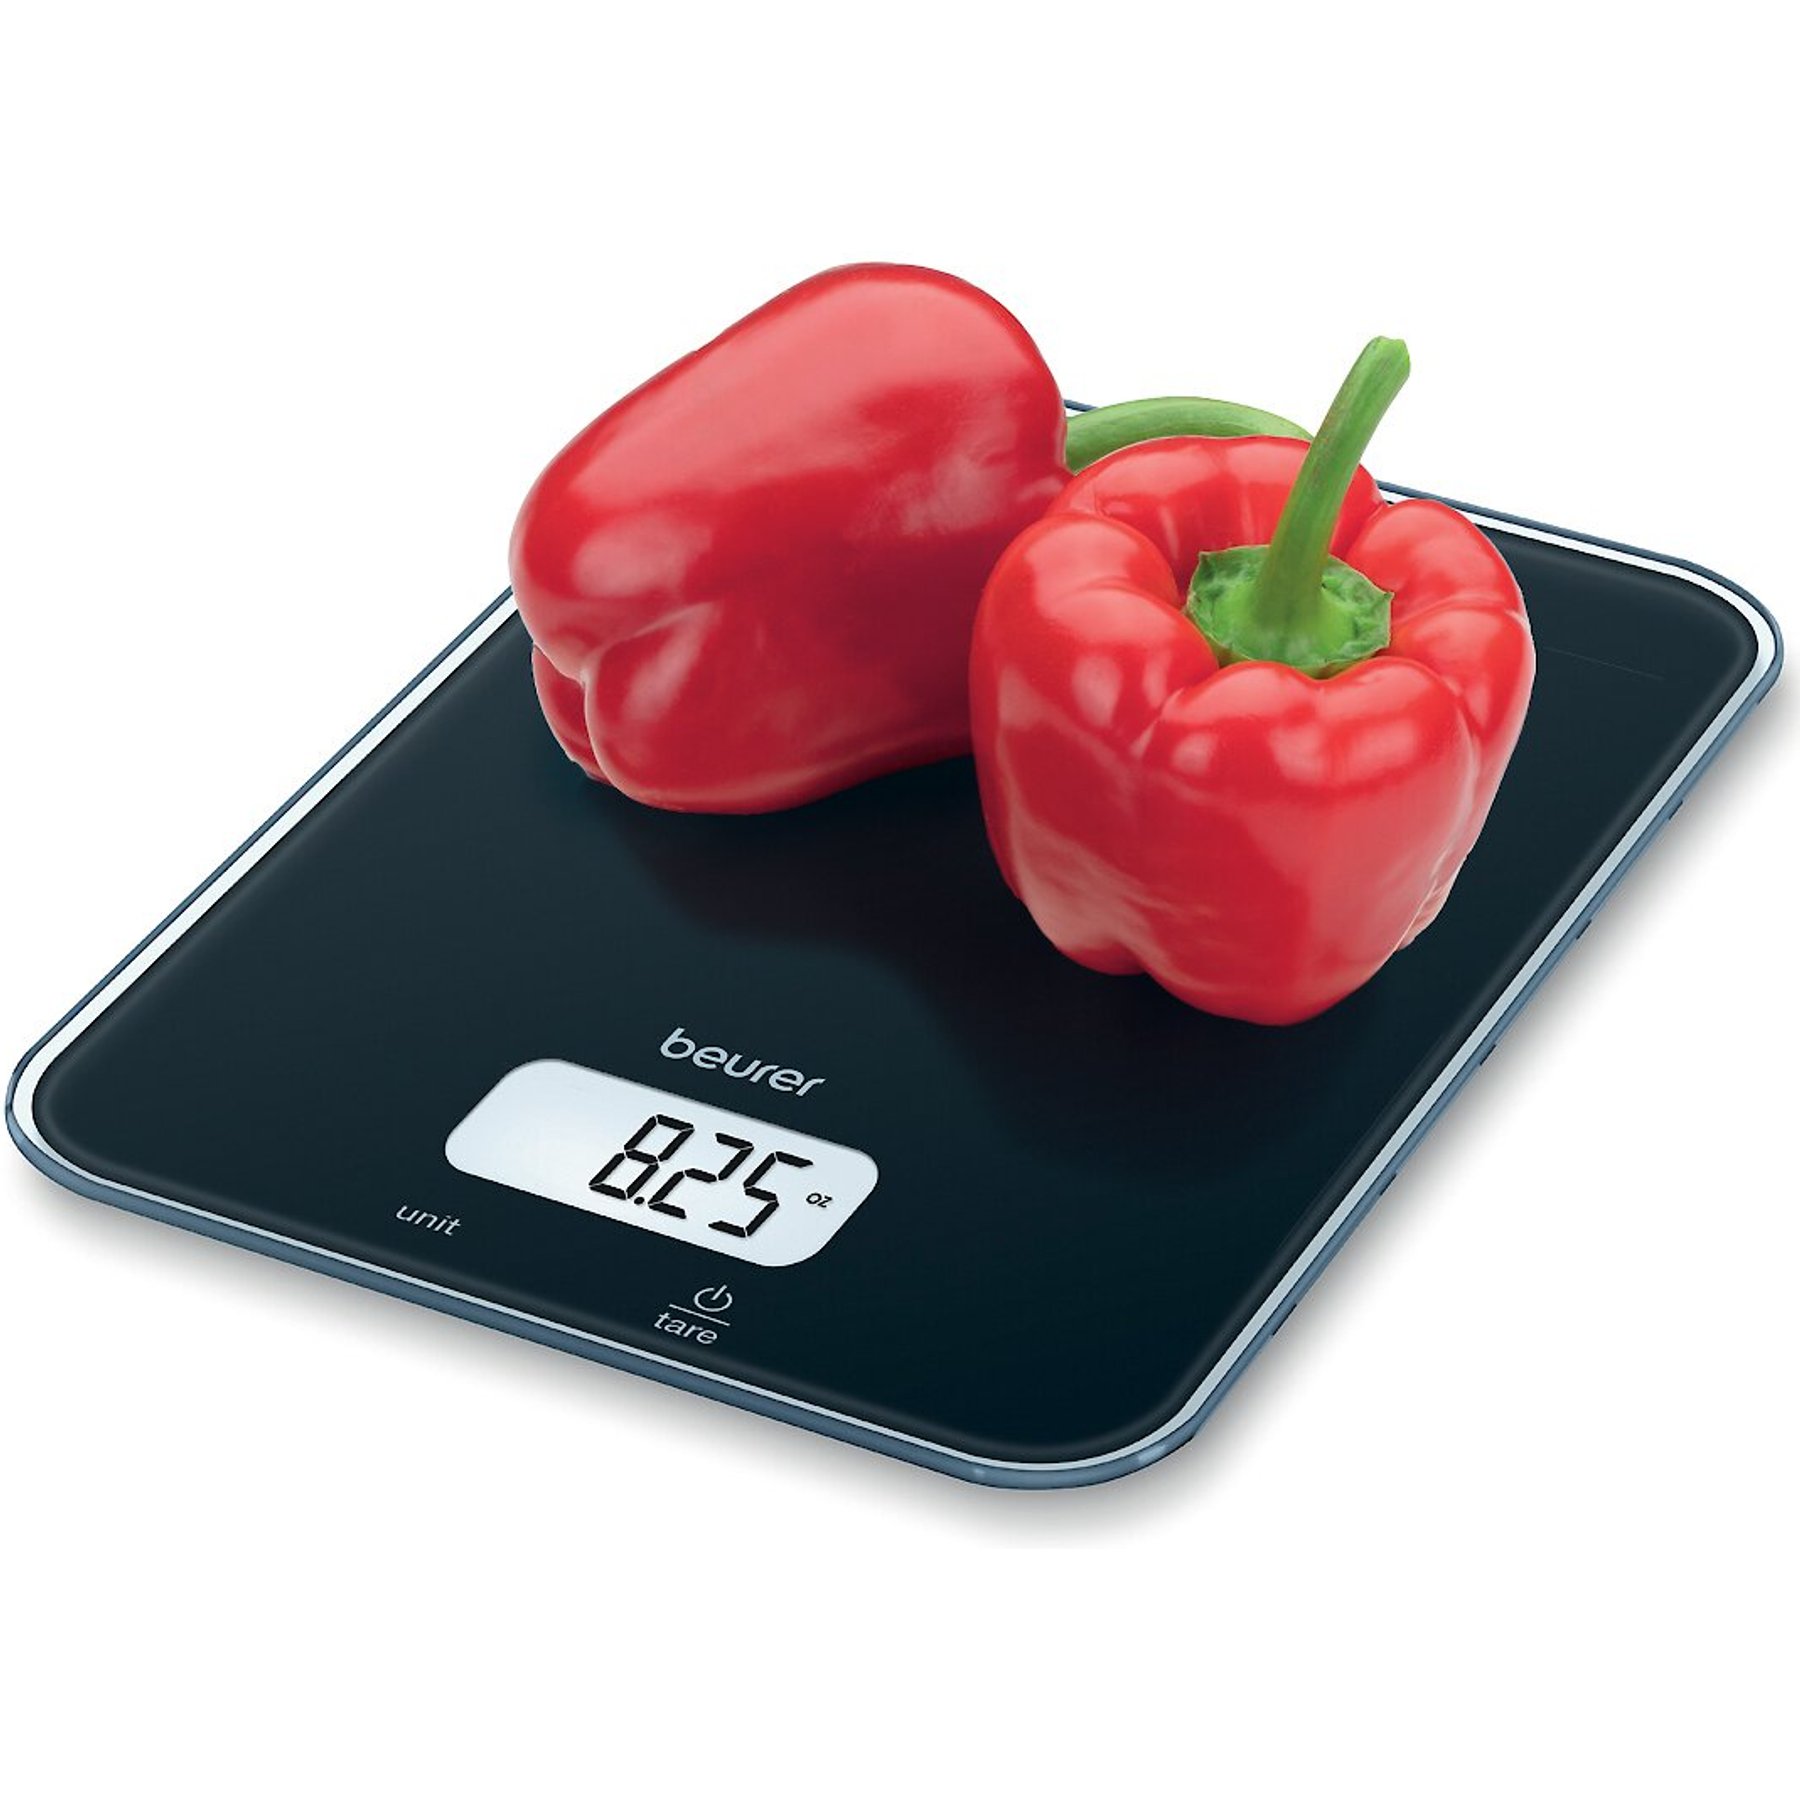 Beurer Digital Kitchen Food Scale, KS34 White